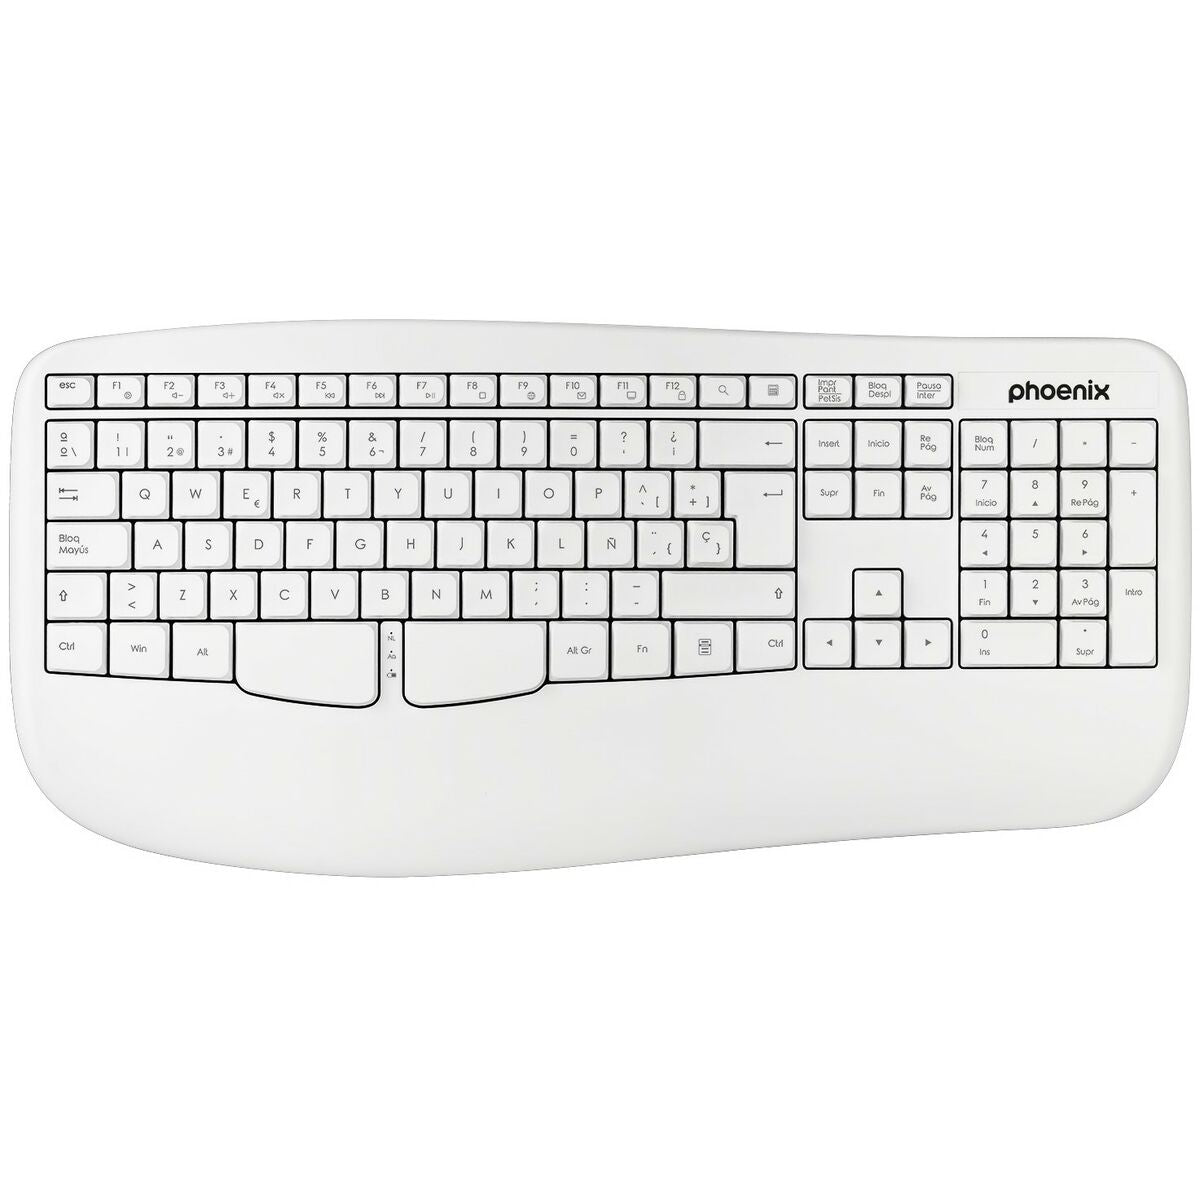 Drahtlose Tastatur Phoenix K201 Weiß Qwerty Spanisch - CA International  